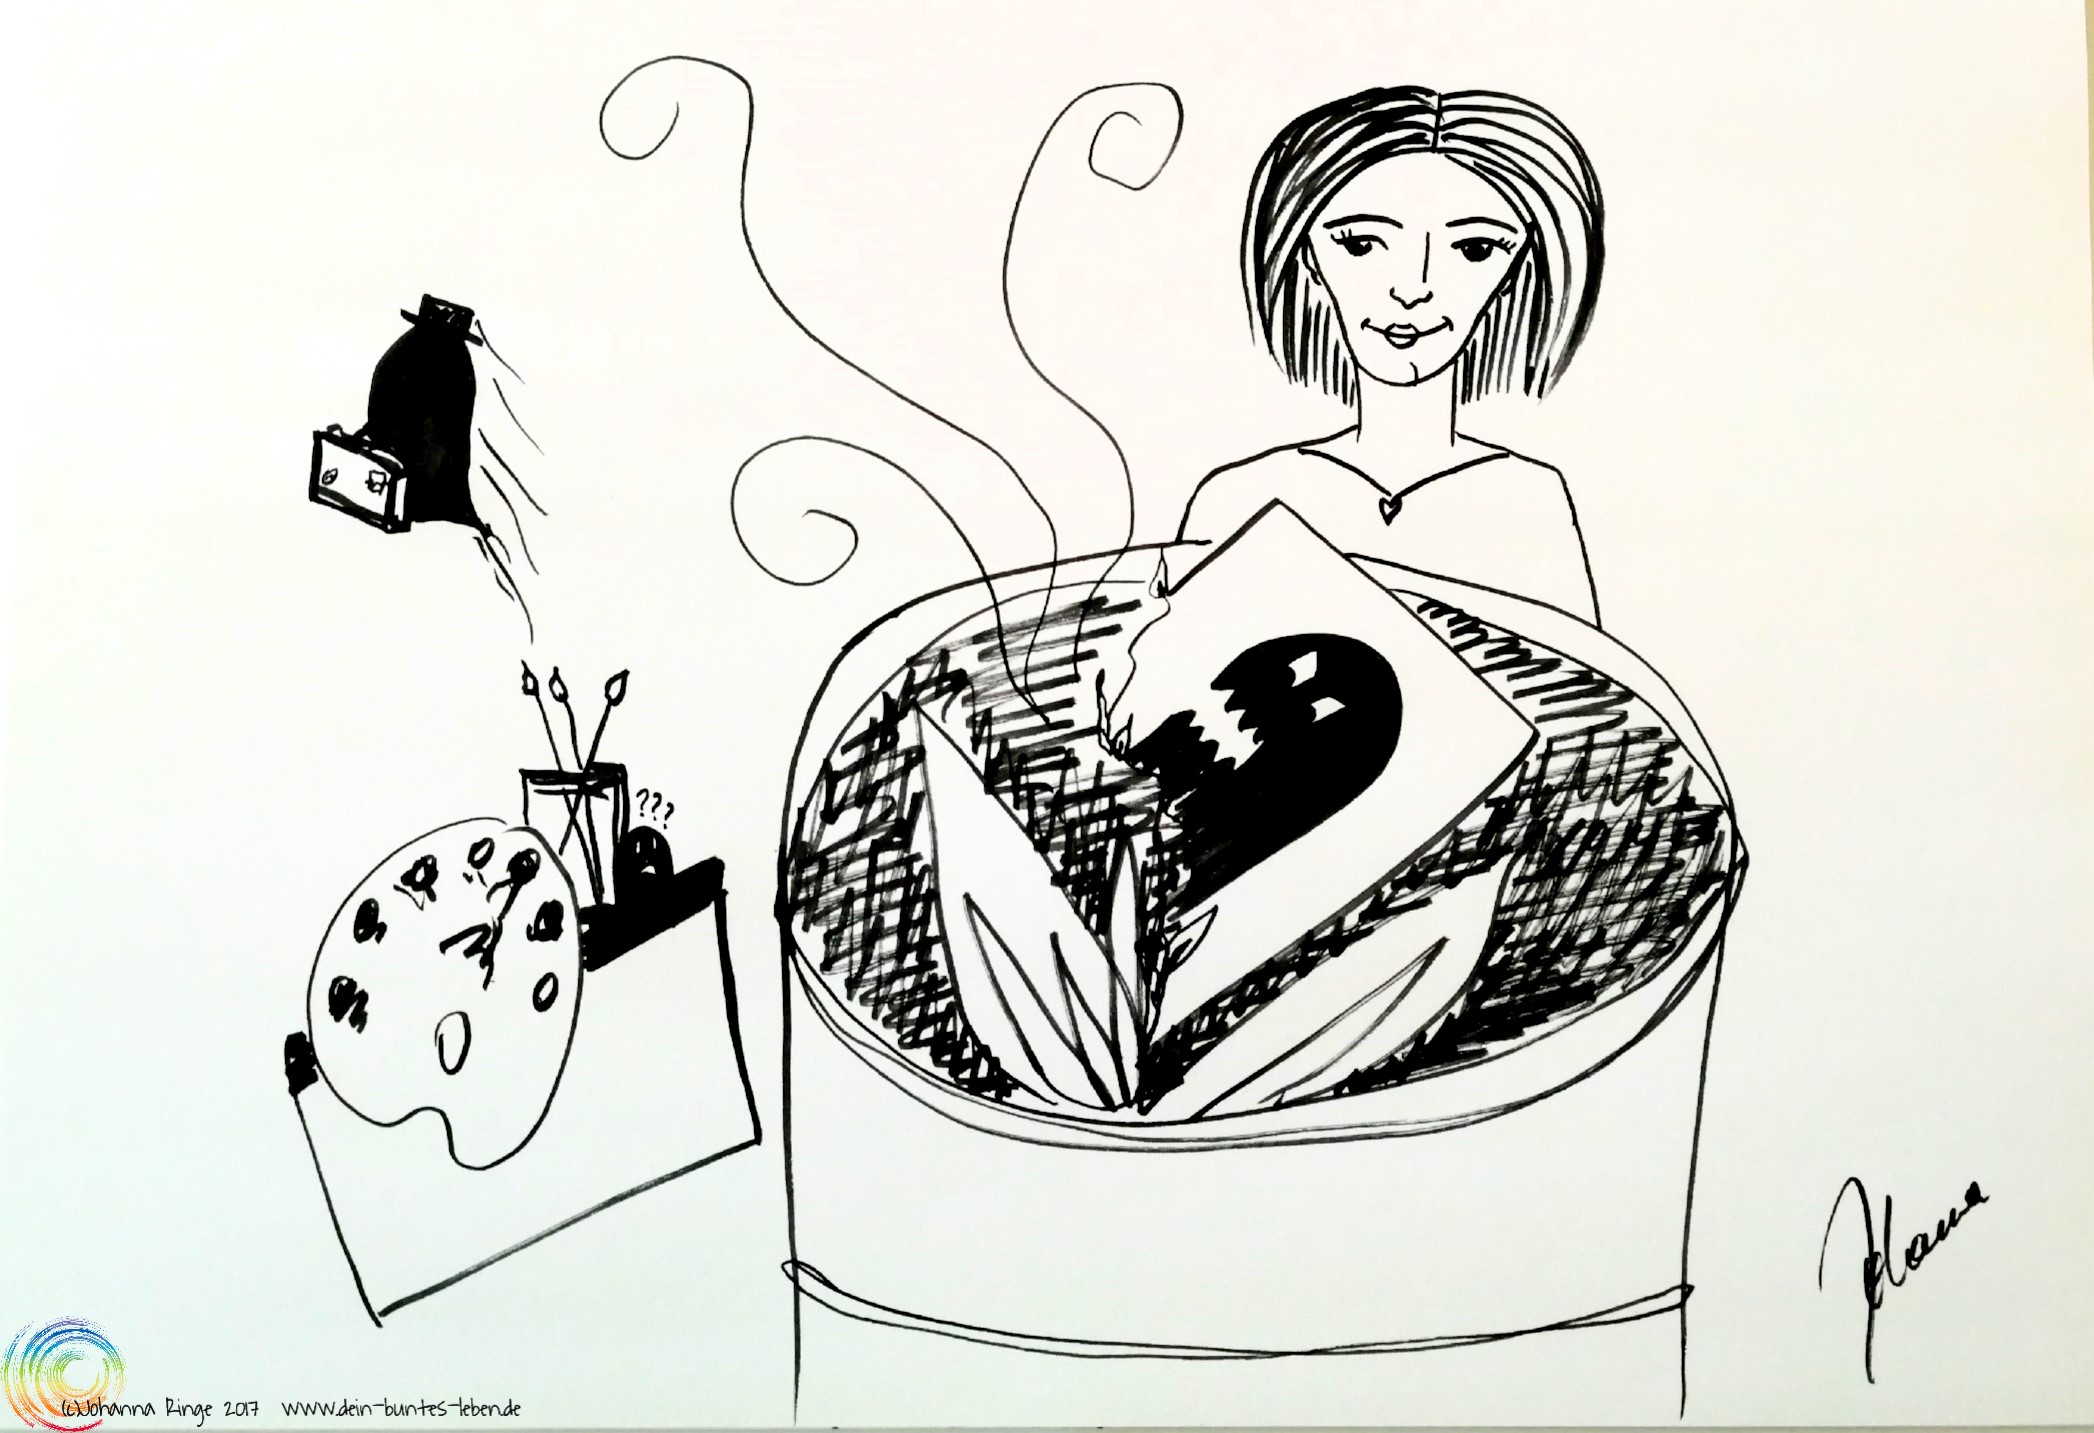 Geisteraustreibende Kreativität: Zeichnung einer Frau, die ein Bild eines Monsters verbrennt, während im Hintergrund das Monster mit Koffer weggeht. (c) 2017 Johanna Ringe www.dein-buntes-leben.de